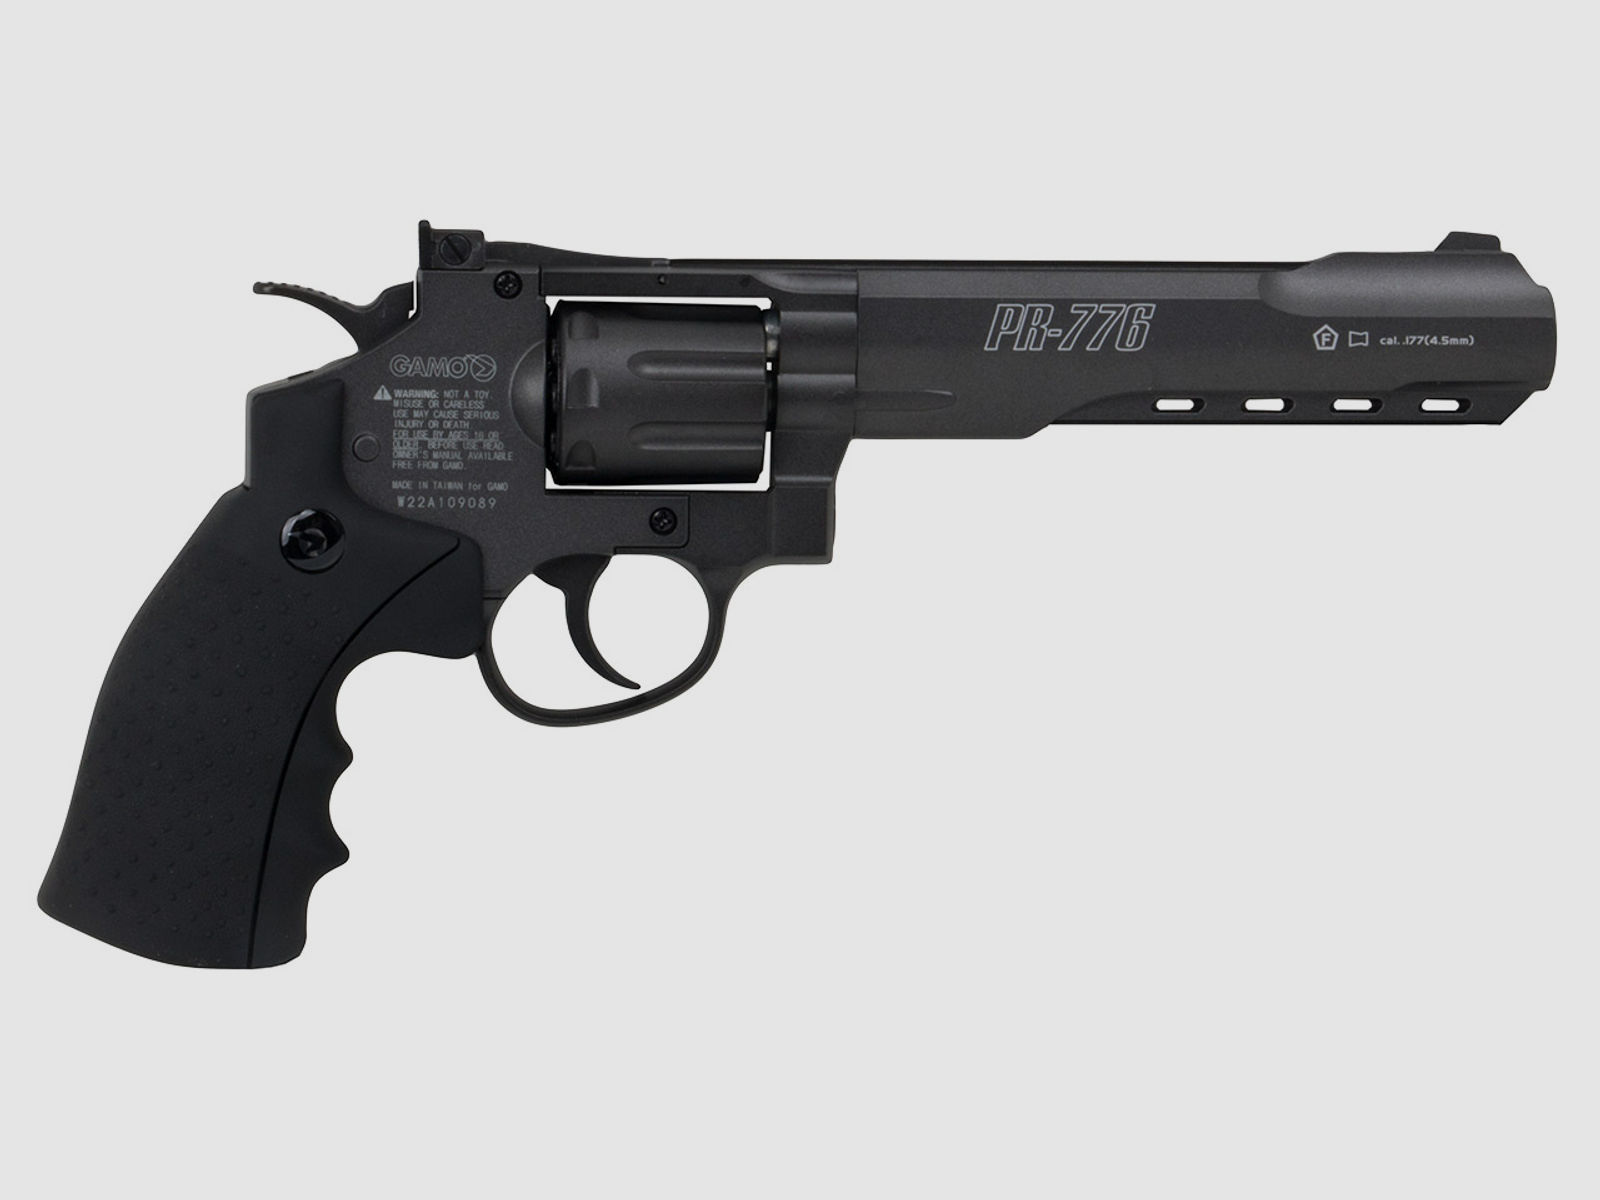 CO2 Revolver Gamo PR-776 Vollmetall Set mit Tasche und ZubehĂ¶r Kaliber 4,5 mm (P18)